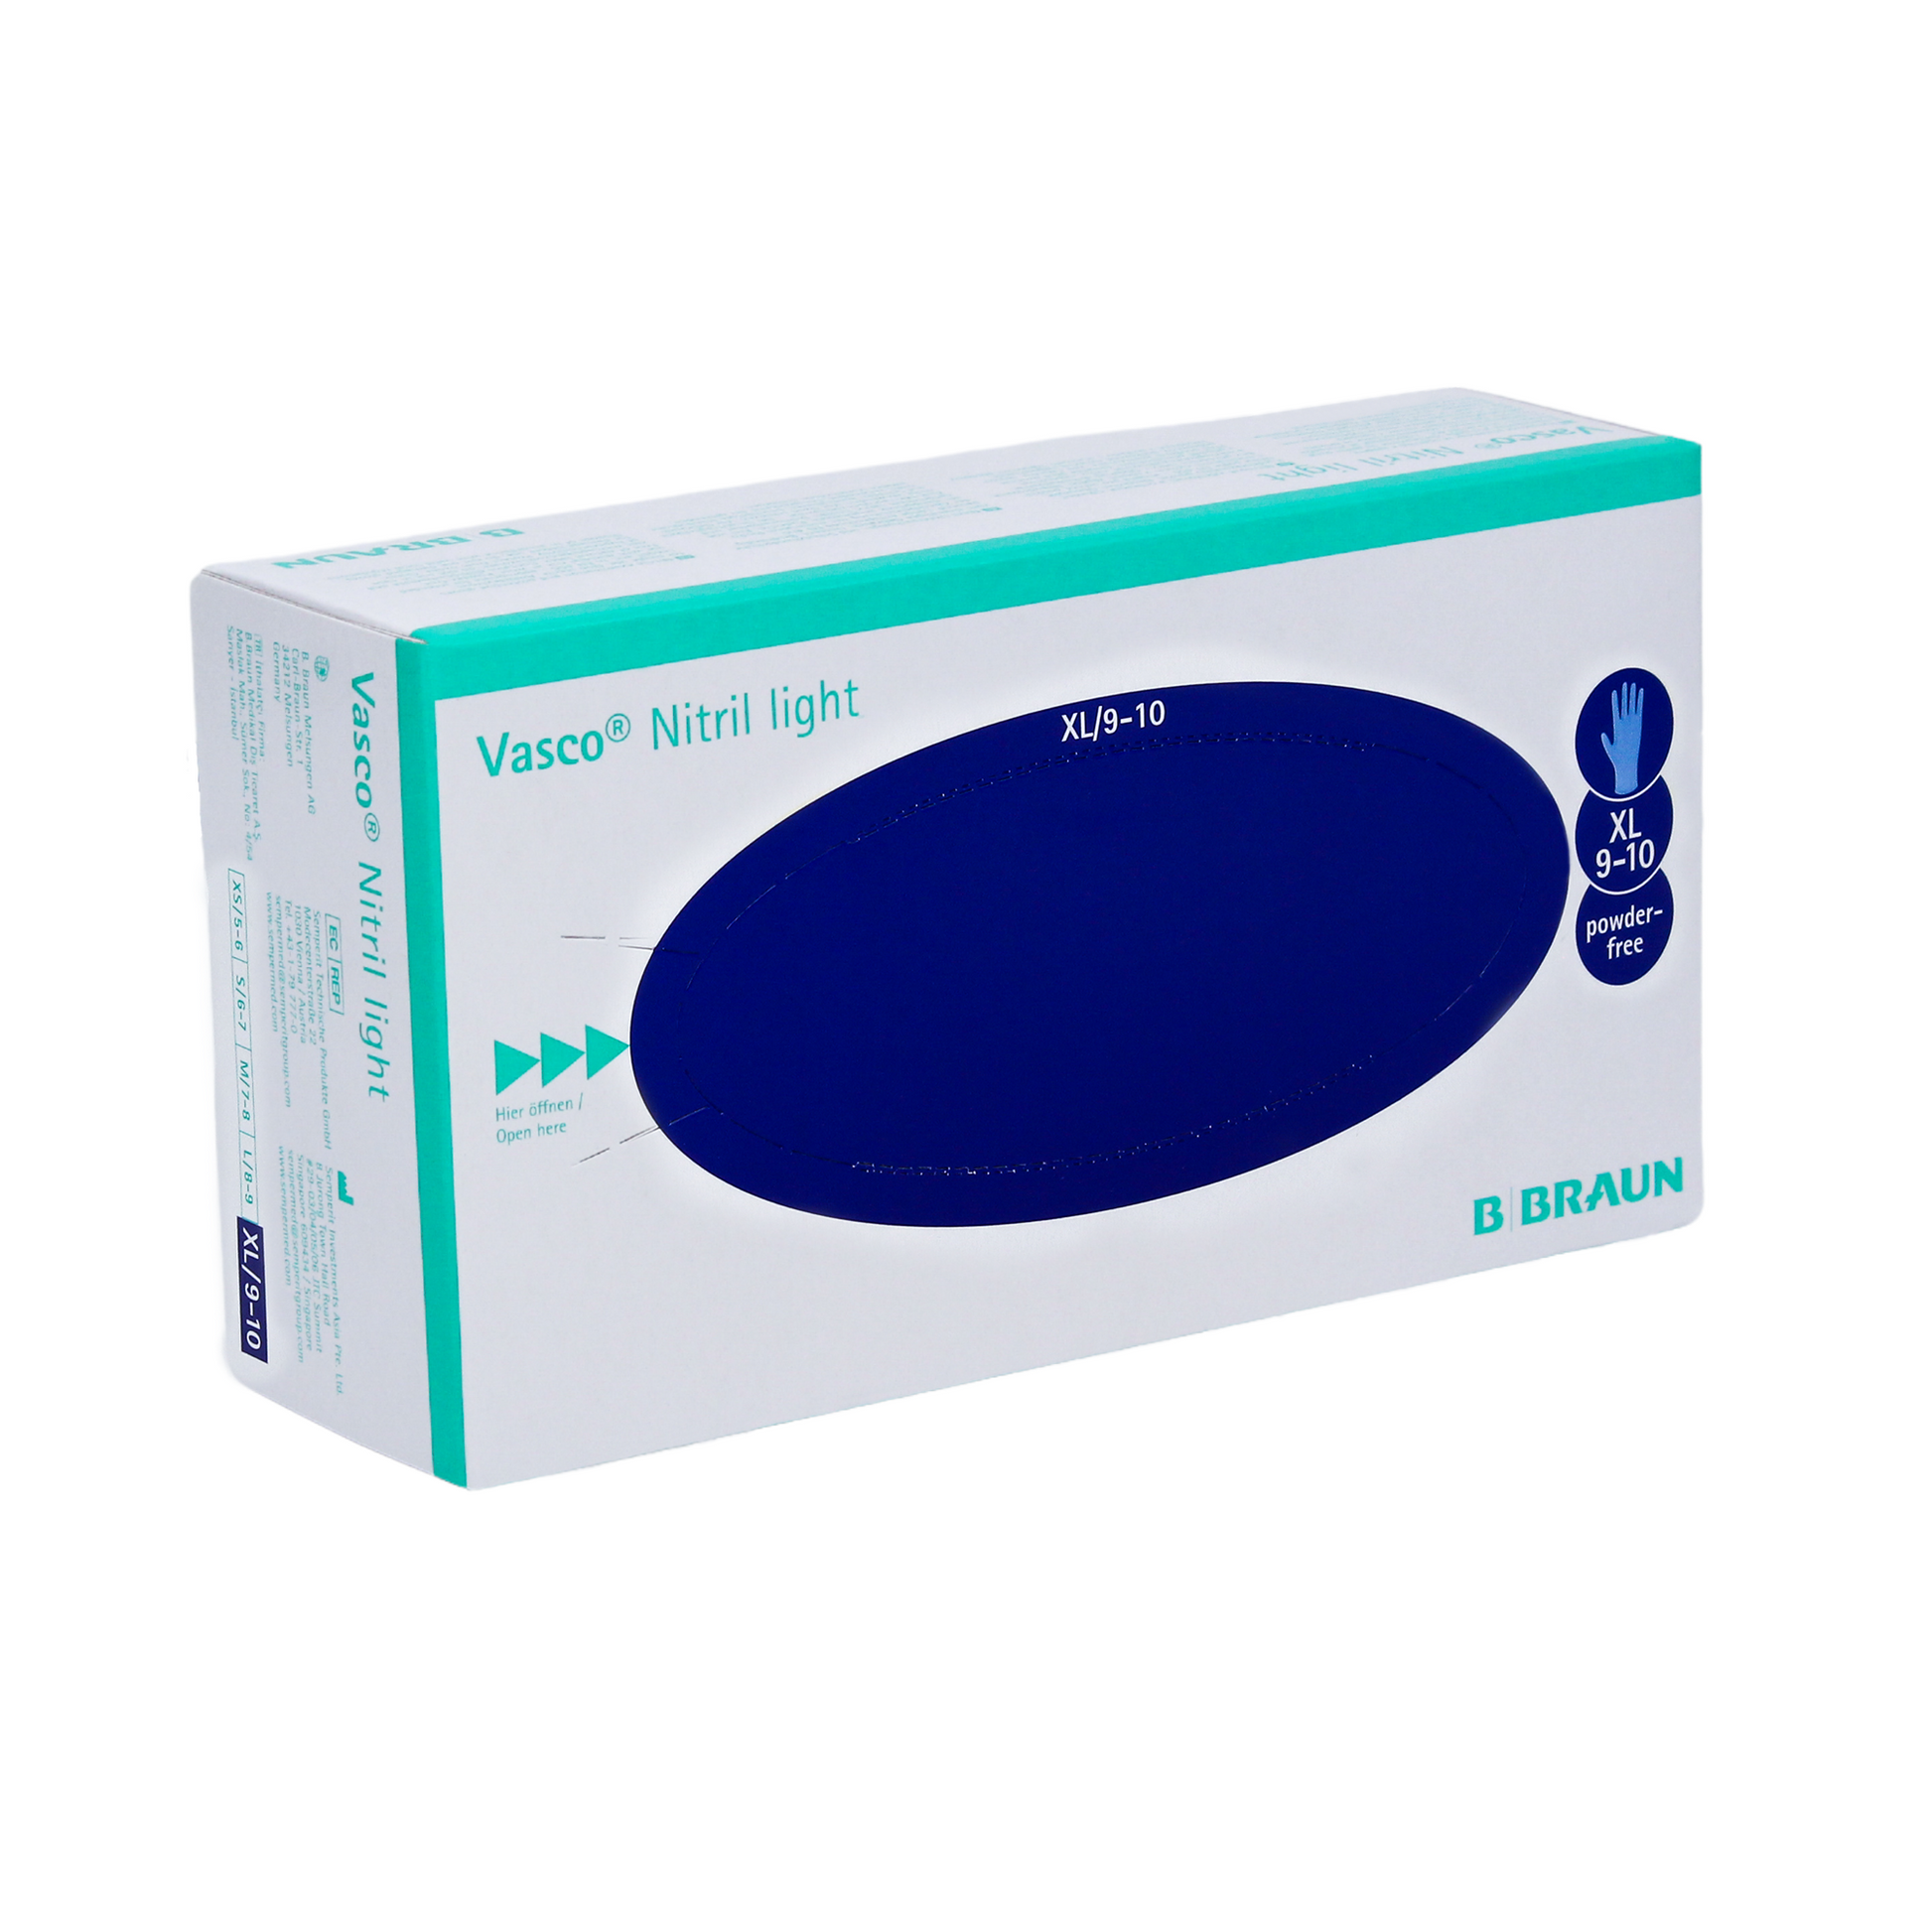 Eine Schachtel B. Braun Vasco® Nitril light Untersuchungshandschuhe in Größe XL, mit einem überwiegend weißen und blaugrünen Design mit einem großen blauen Oval und einem Text zur Produktbeschreibung.